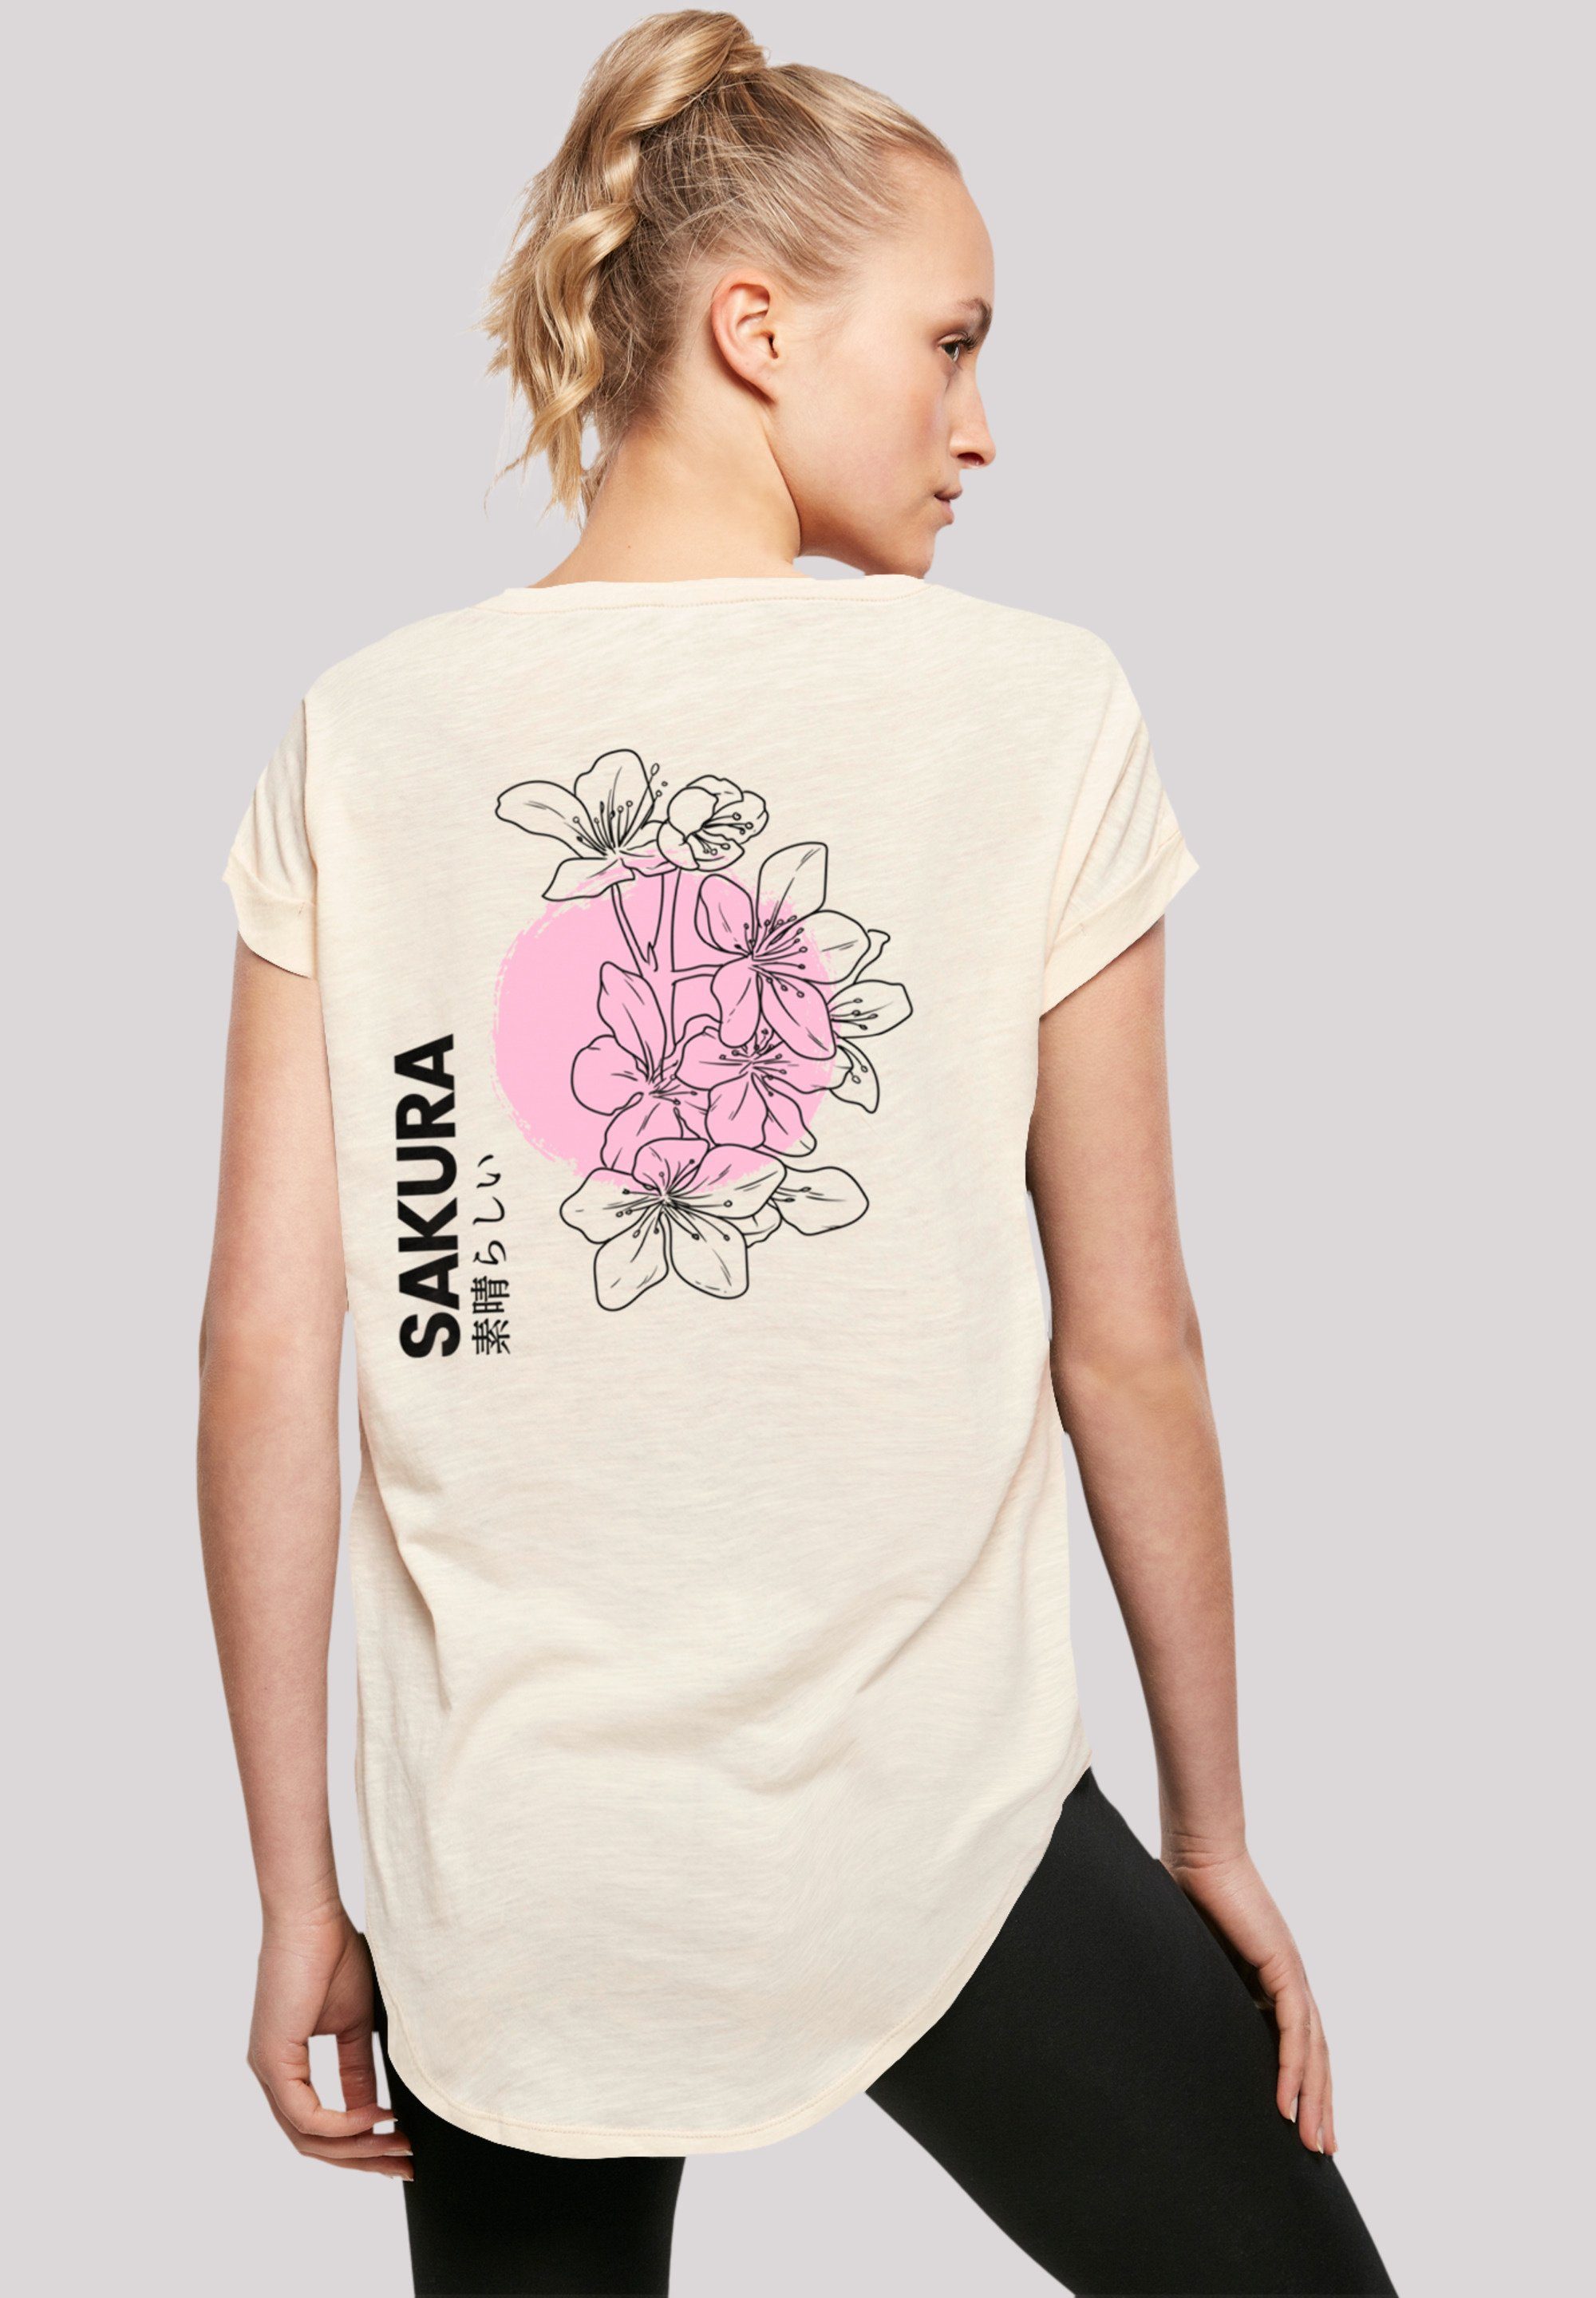 F4NT4STIC T-Shirt Sakura Japan Grafik Sehr Print, mit Tragekomfort hohem weicher Baumwollstoff